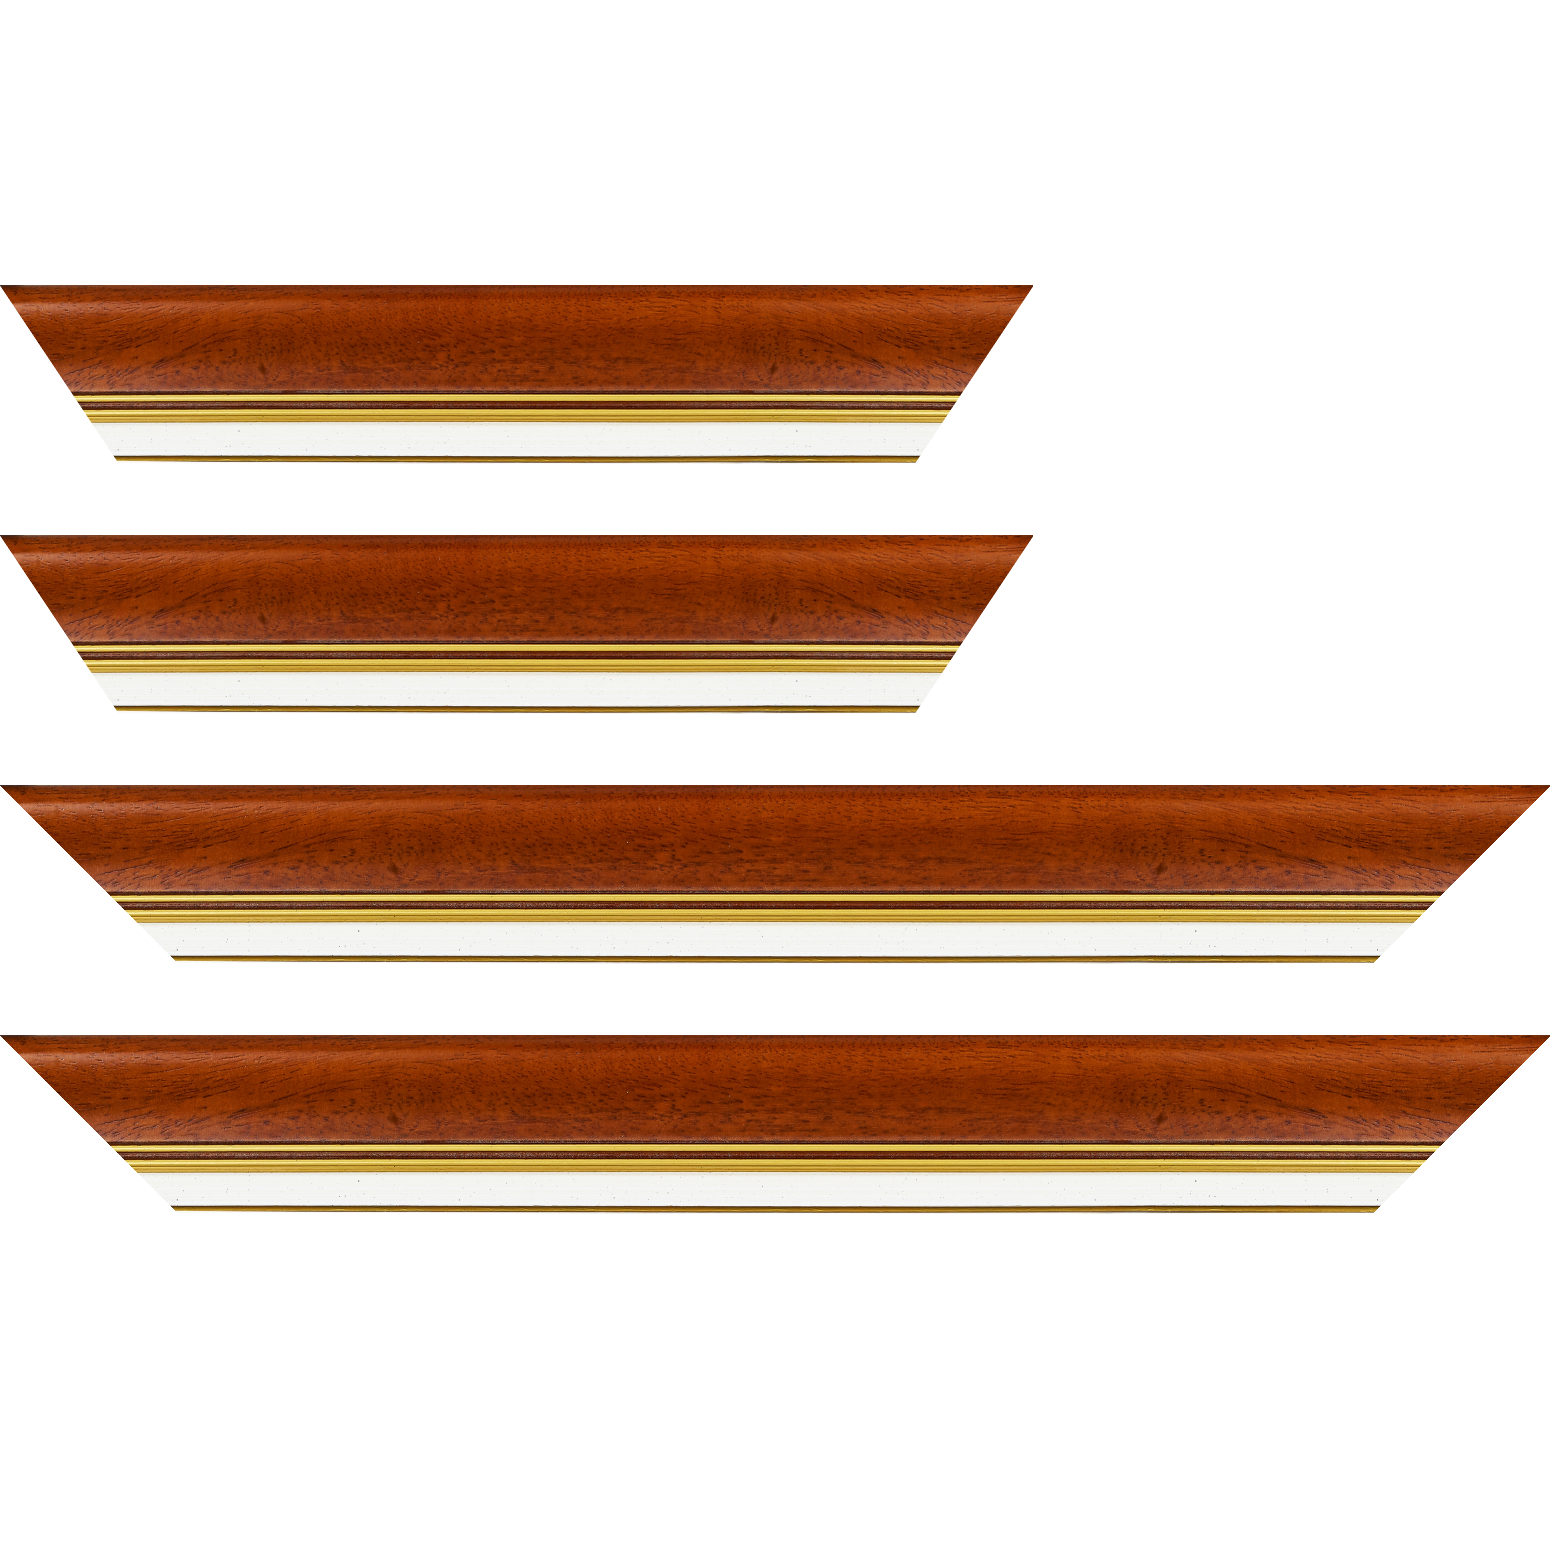 Baguette bois profil incurvé largeur 5.7cm de couleur marron ton bois marie louise blanche mouchetée filet or intégré - 50x60